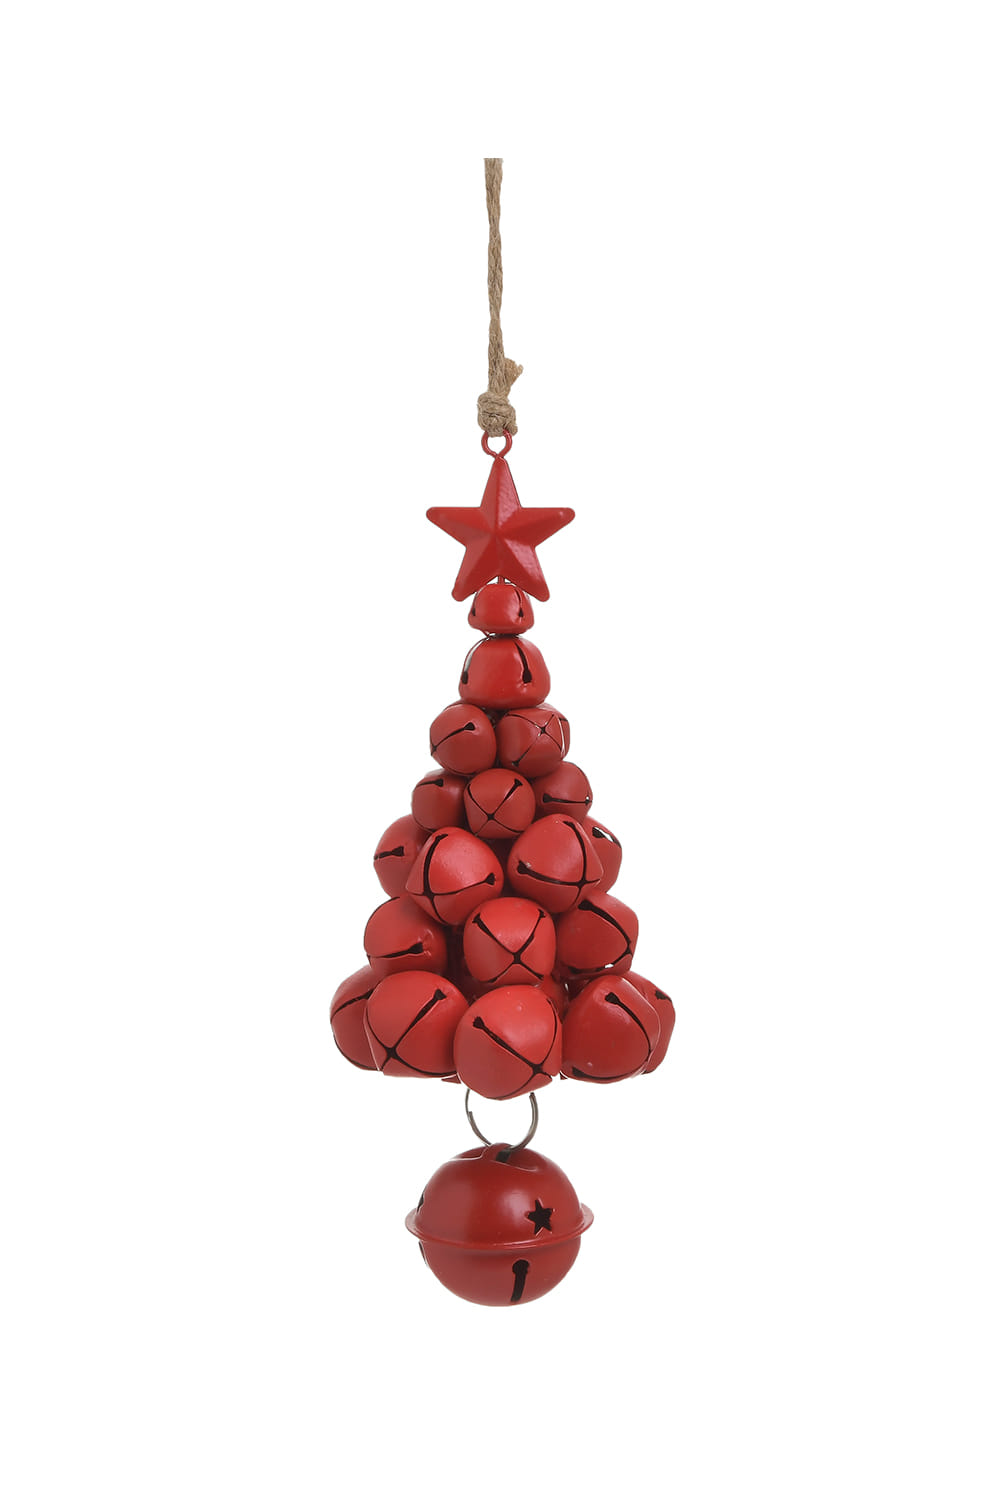 Athome Pavloudakis - Χριστουγεννιάτικο κόκκινο μεταλλικό διακοσμητικό στολίδι δενδράκι με κουδουνάκια (7x7x17 cm)